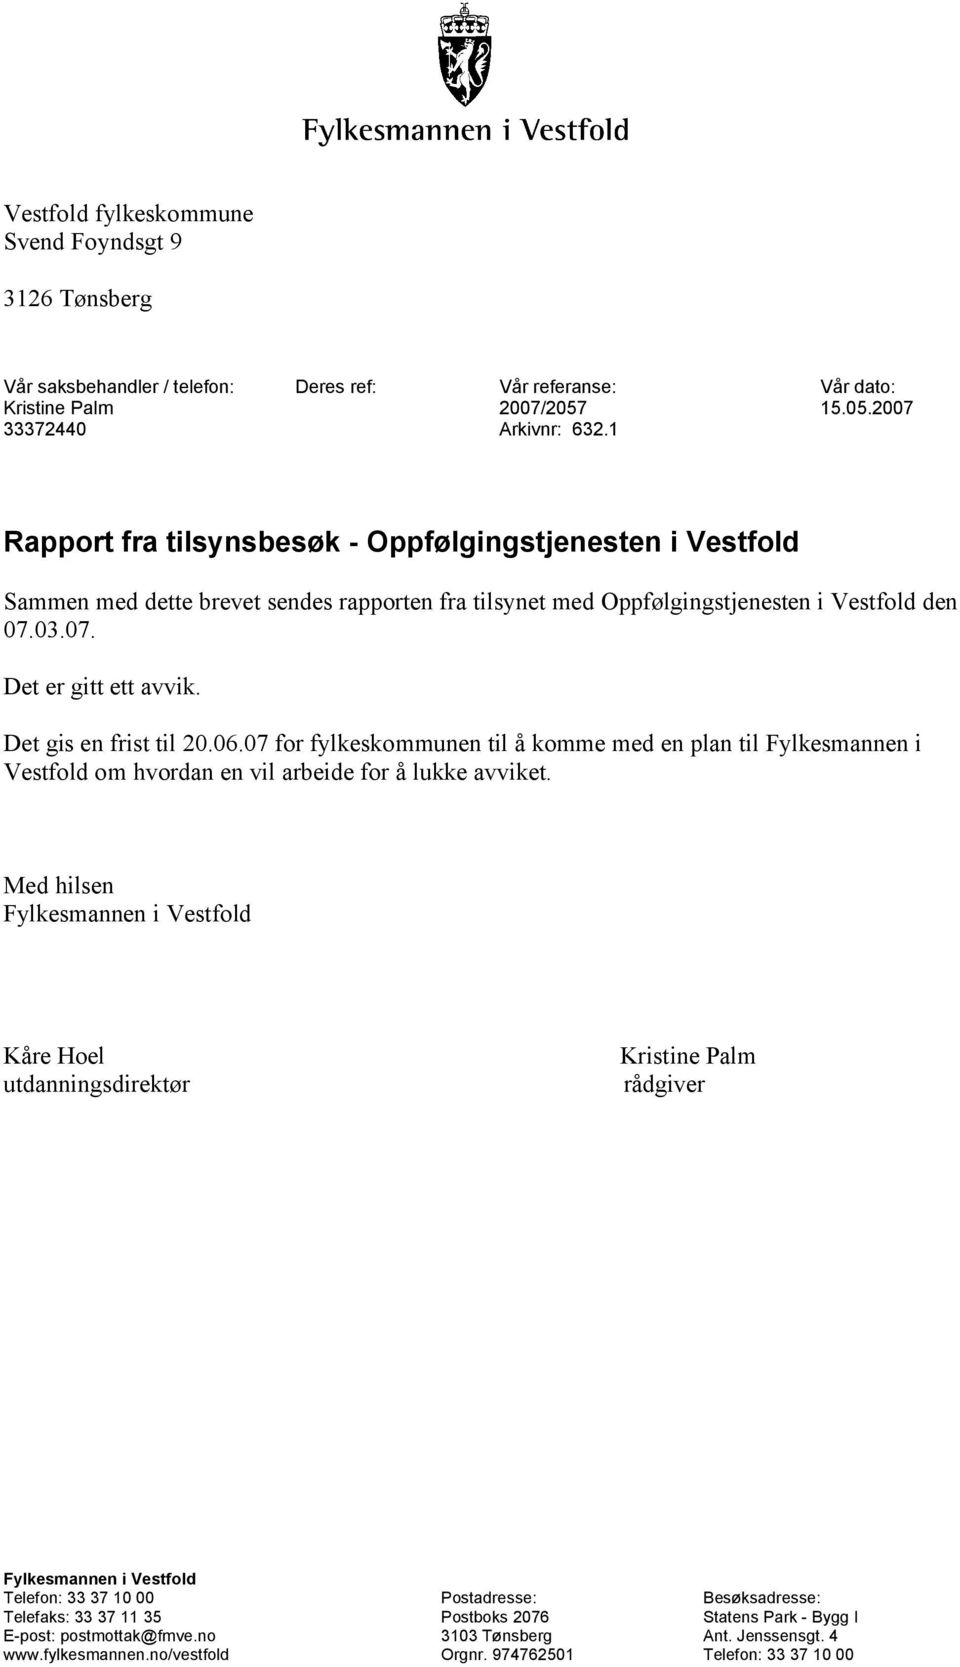 Det gis en frist til 20.06.07 for fylkeskommunen til å komme med en plan til Fylkesmannen i Vestfold om hvordan en vil arbeide for å lukke avviket.